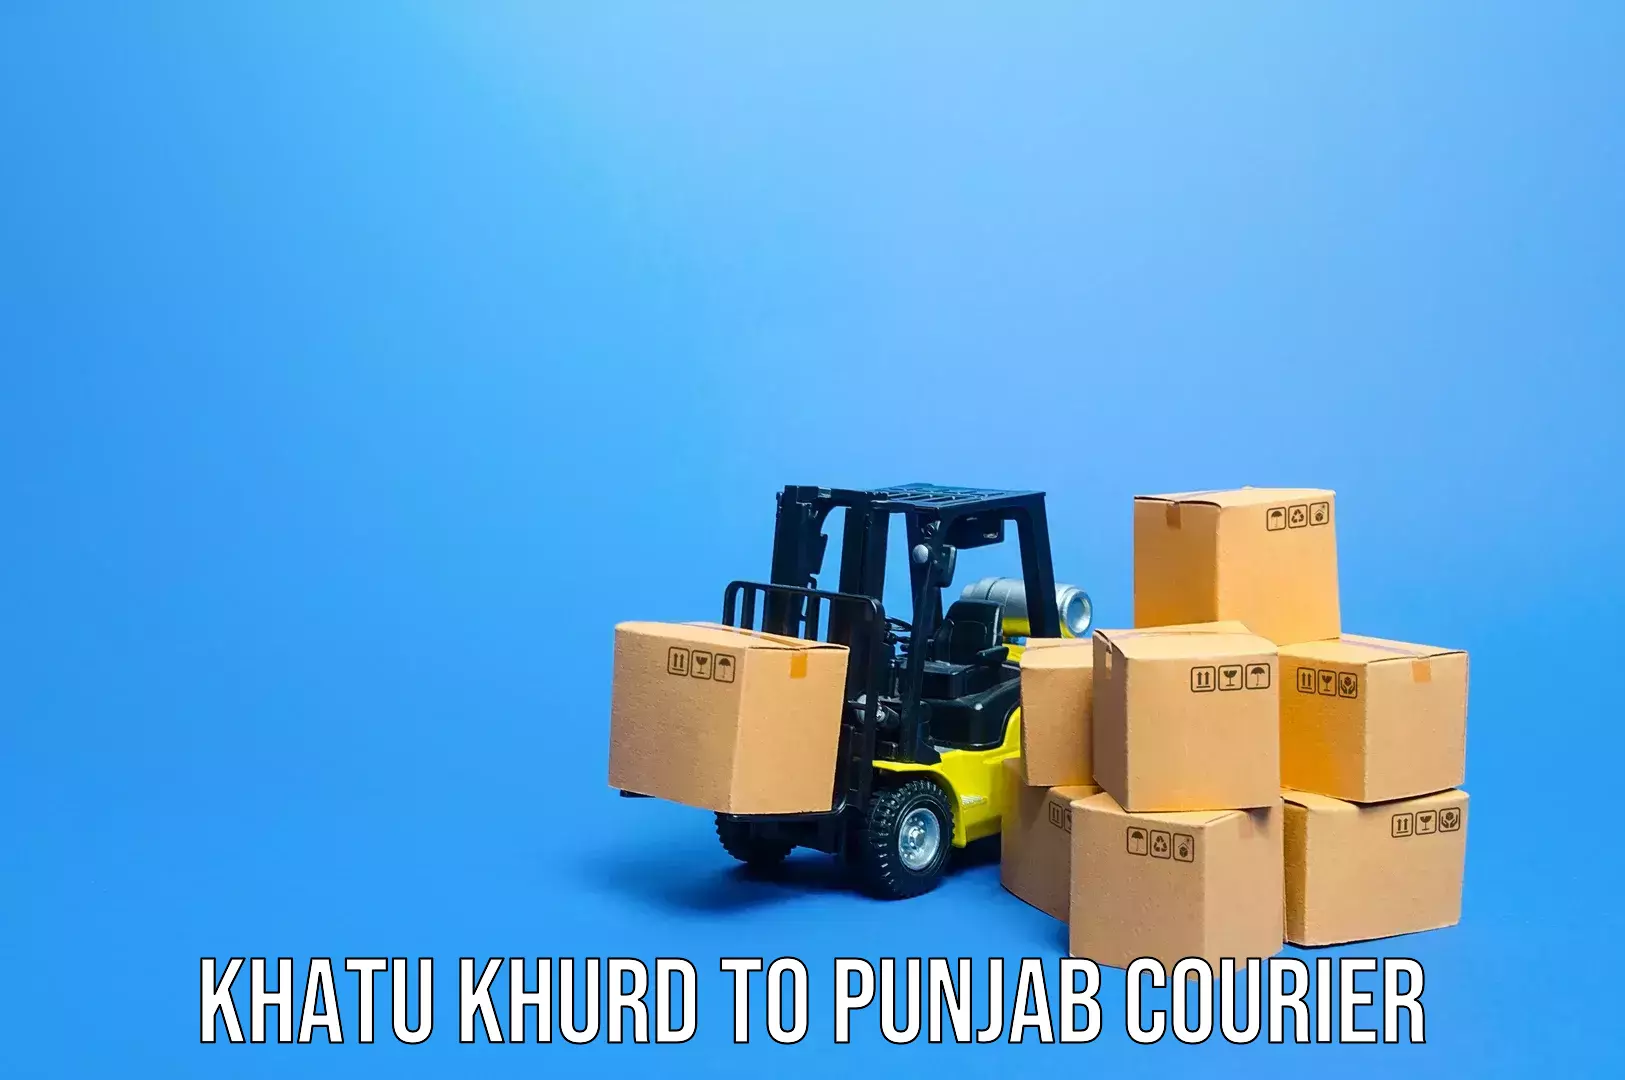 Urgent luggage shipment Khatu Khurd to Central University of Punjab Bathinda